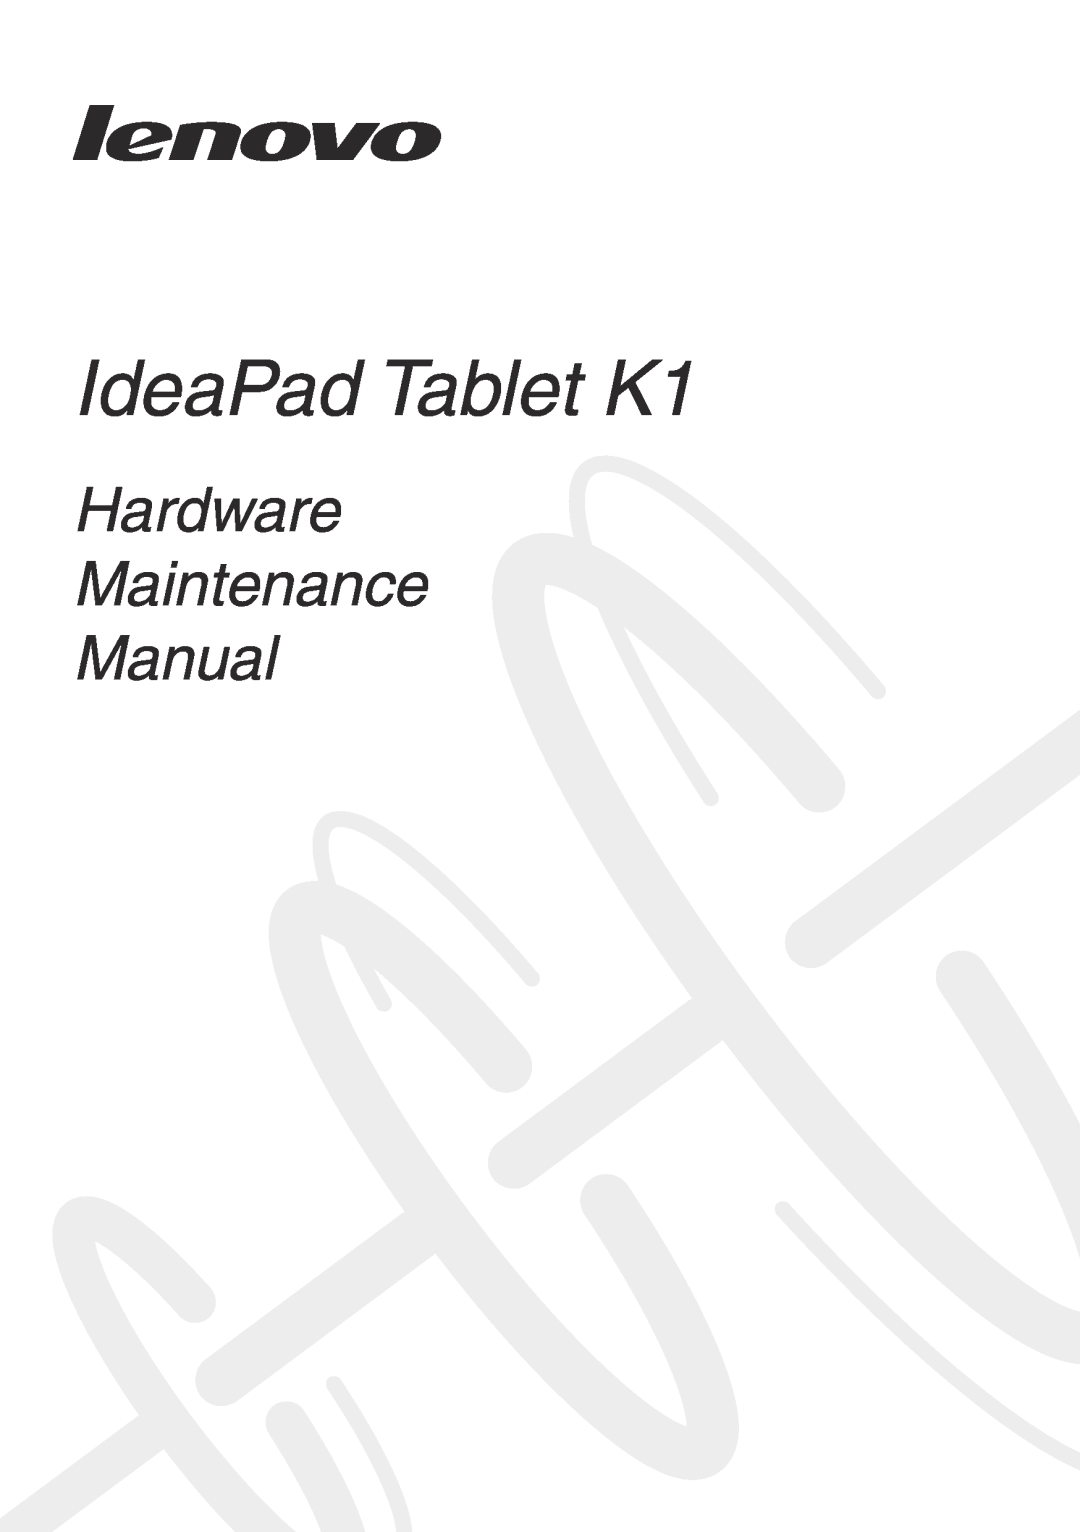 Lenovo 1304XF8, T20x2-1 manual IdeaPad Tablet K1, Hardware Maintenance Manual 